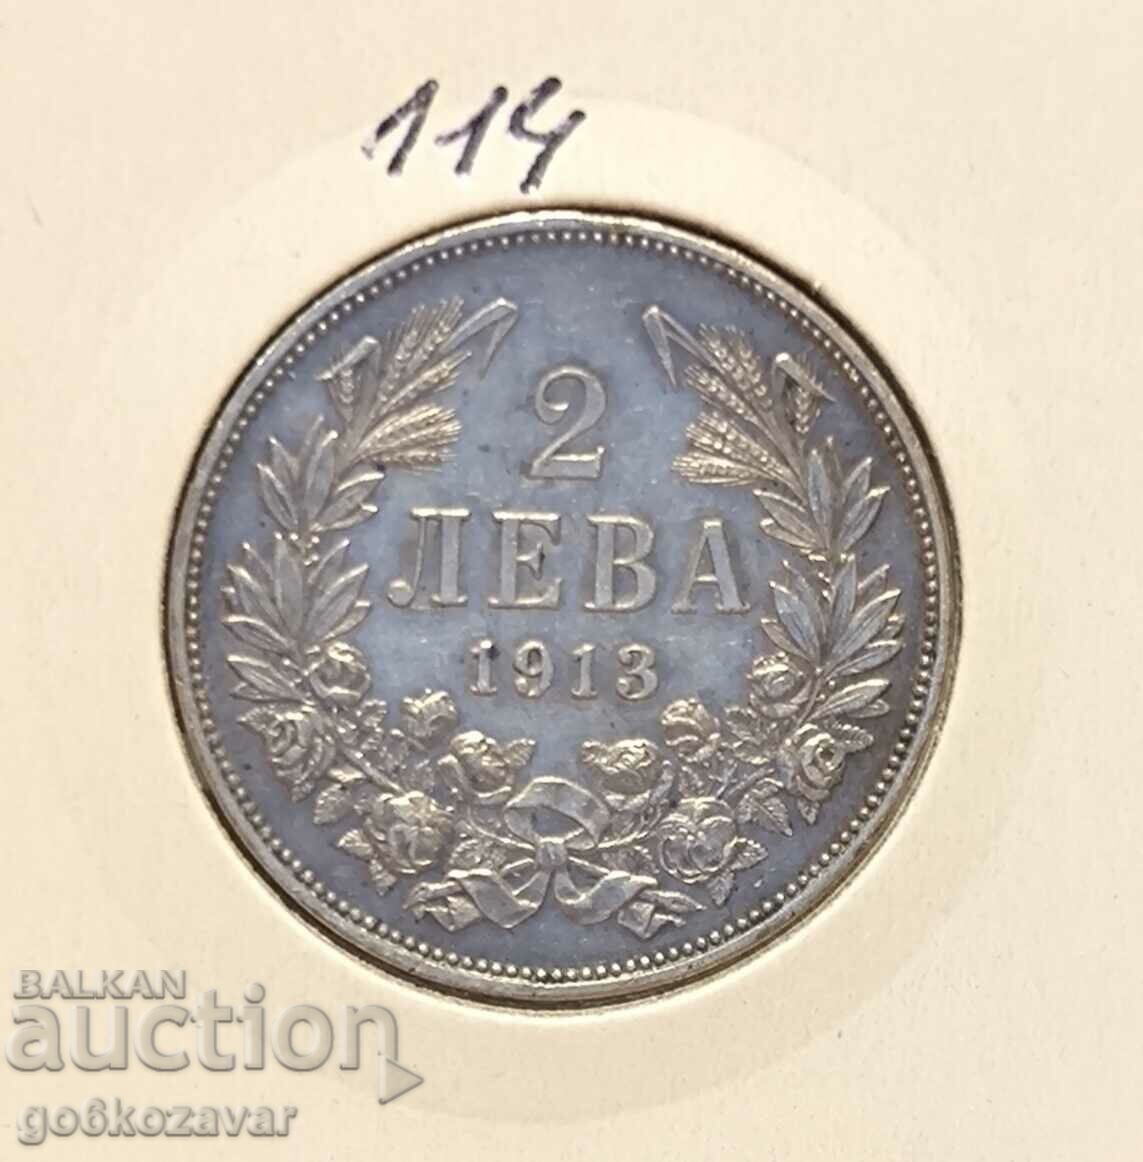 Bulgaria 2 BGN 1913 Silver! Collection!